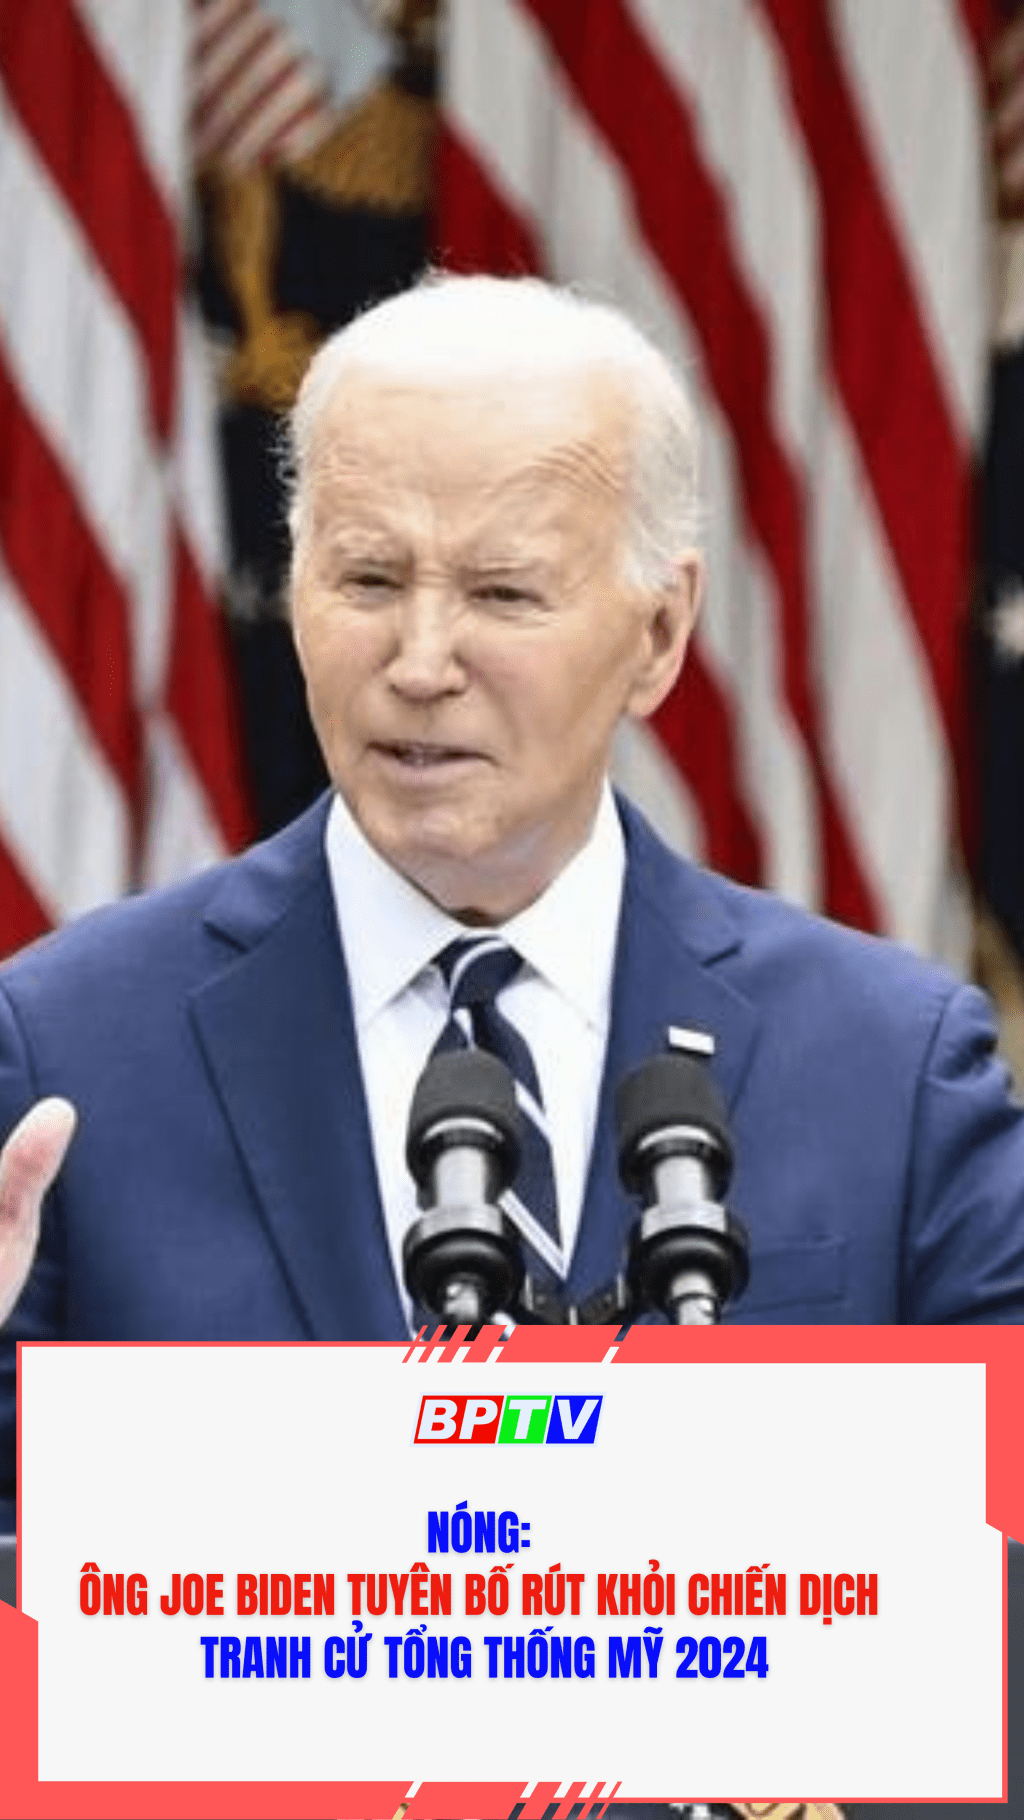 Nóng: Ông Joe Biden tuyên bố rút khỏi chiến dịch tranh cử Tổng thống Mỹ 2024  #shorts